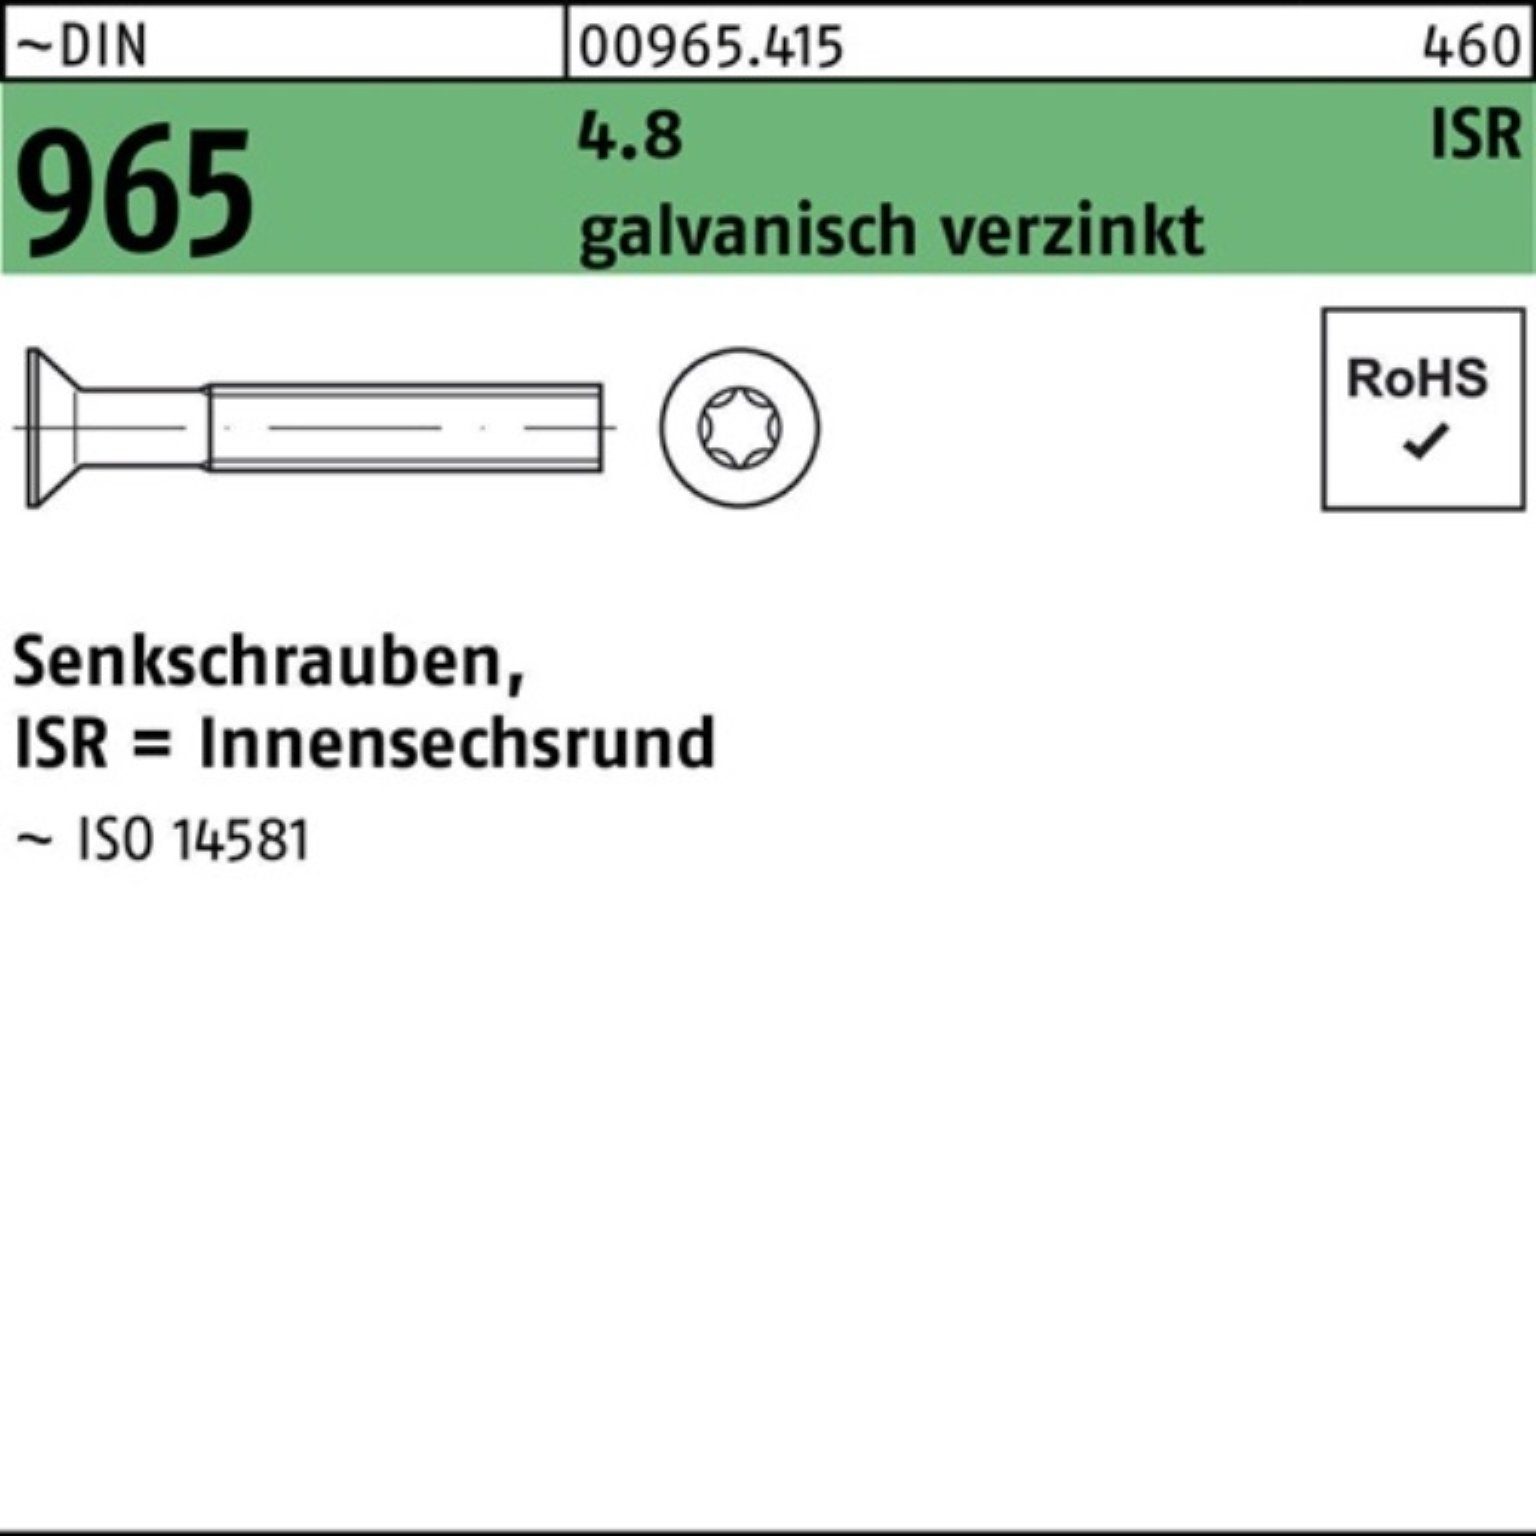 Reyher Senkschraube 2000er M4x10-T20 galv.verz. 965 DIN 2000St. 4.8 ISR Senkschraube Pack